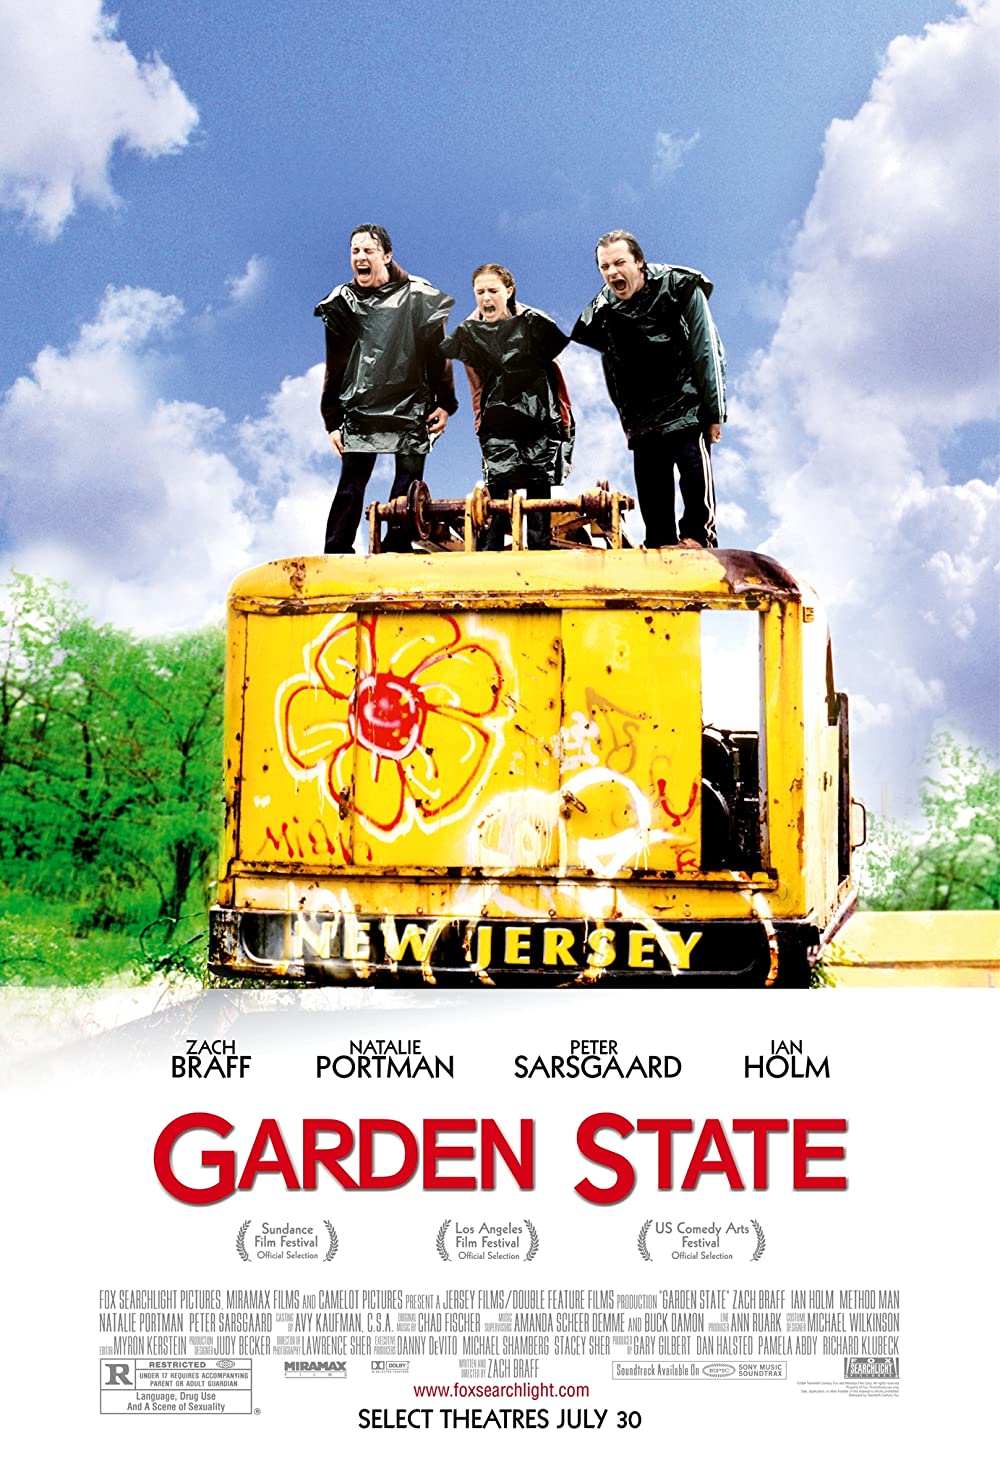 Filmbeschreibung zu Garden State